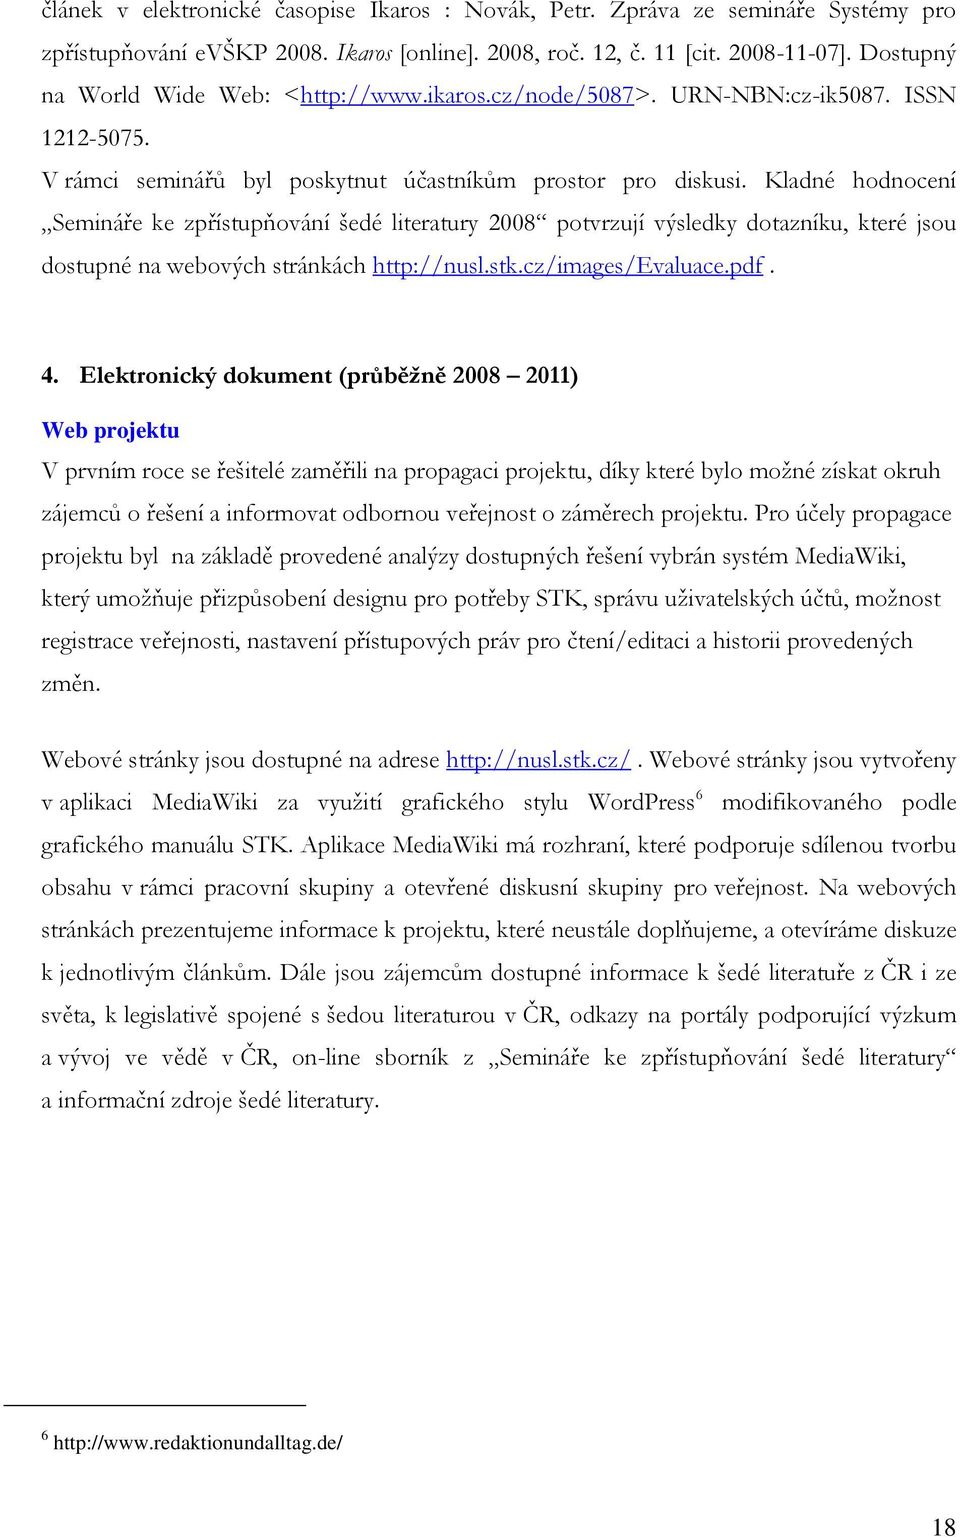 Kladné hodnocení Semináře ke zpřístupňování šedé literatury 2008 potvrzují výsledky dotazníku, které jsou dostupné na webových stránkách http://nusl.stk.cz/images/evaluace.pdf. 4.